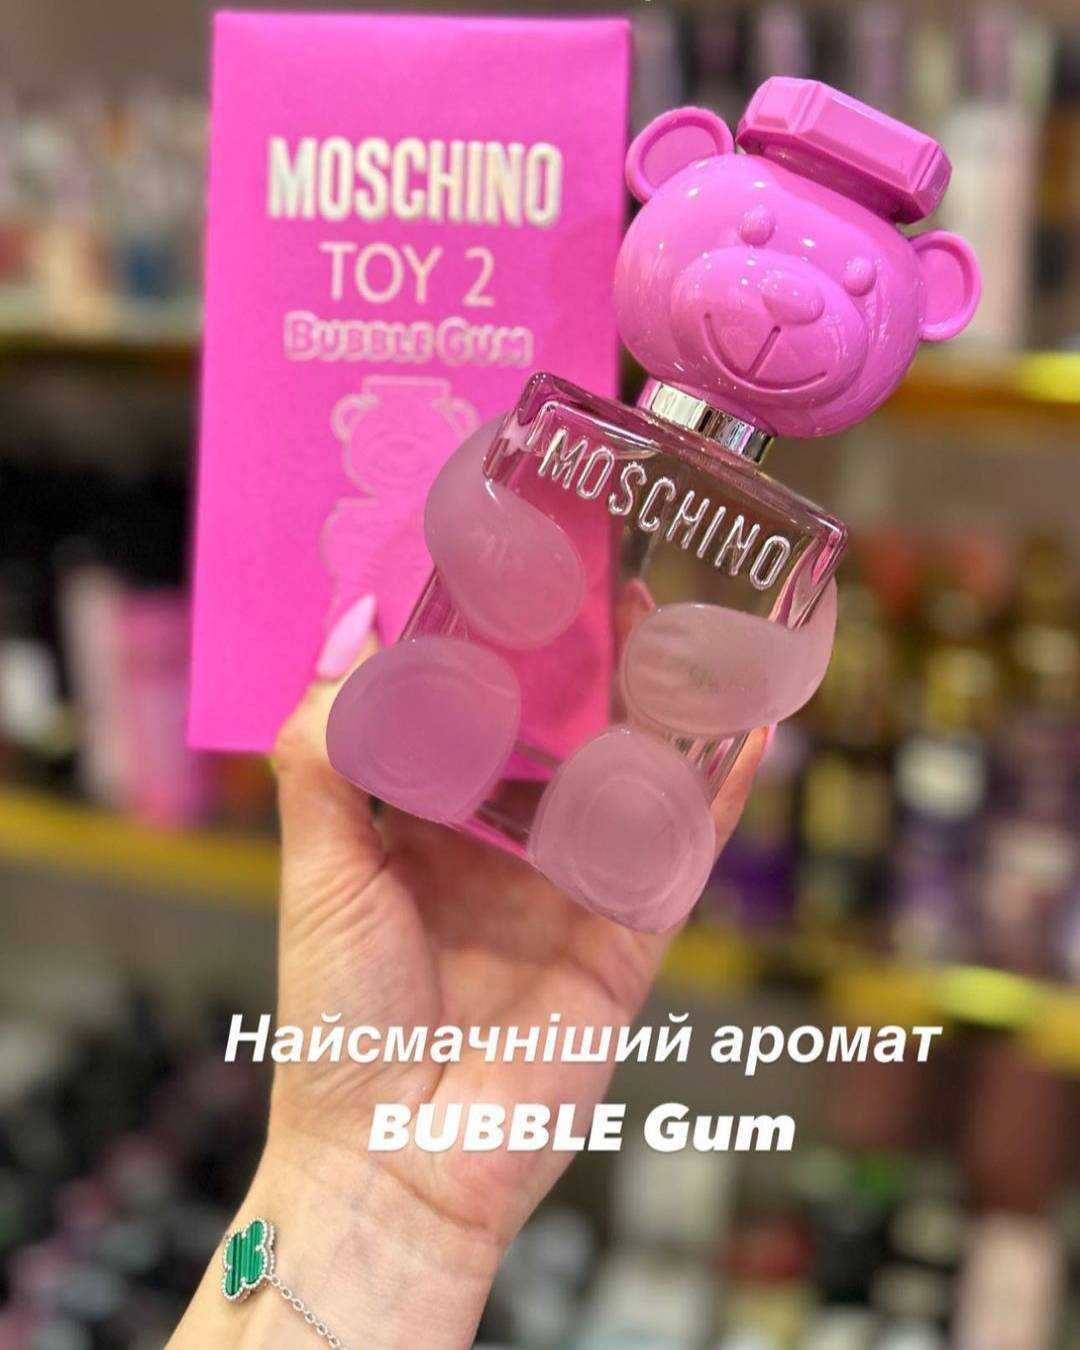 Москіно Toy 2 Bubble Gum (Москино Той 2 Бабл гам) женские духи